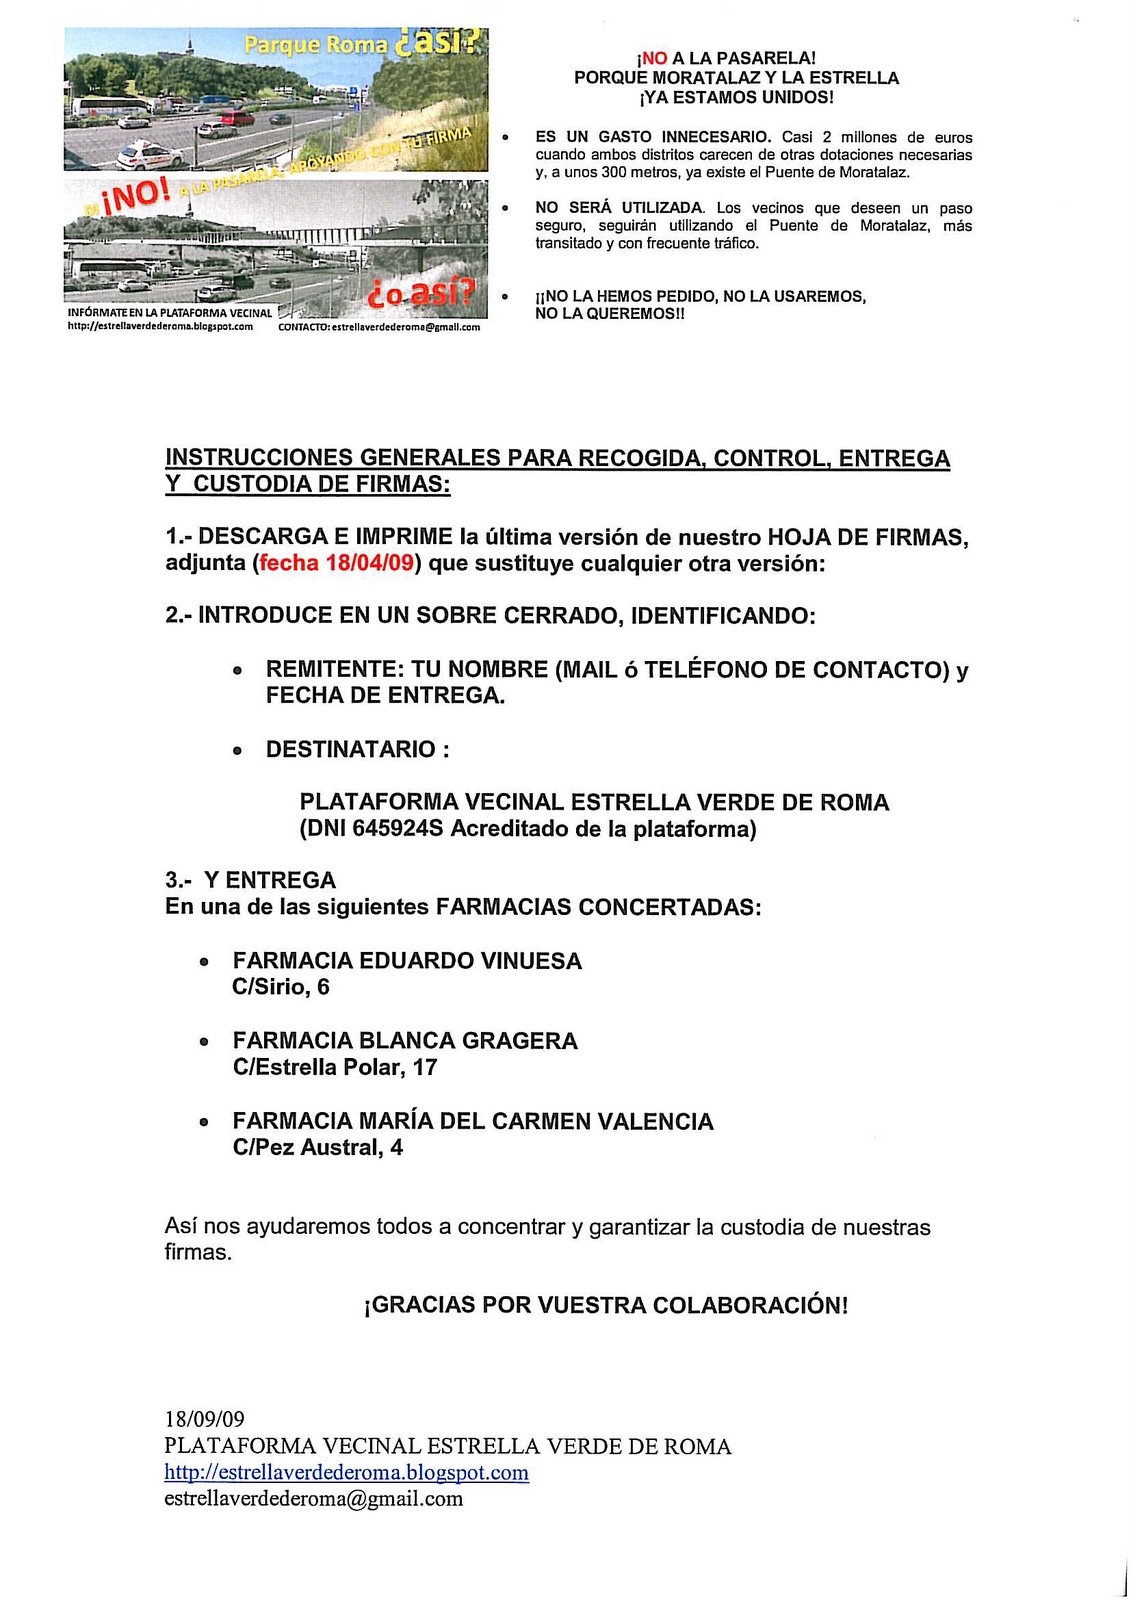 ¡NUEVO! INSTRUCCIONES Y RECOGIDA DE FIRMAS (V.5 FECHA 18/04/2009) con LEMA consensuado